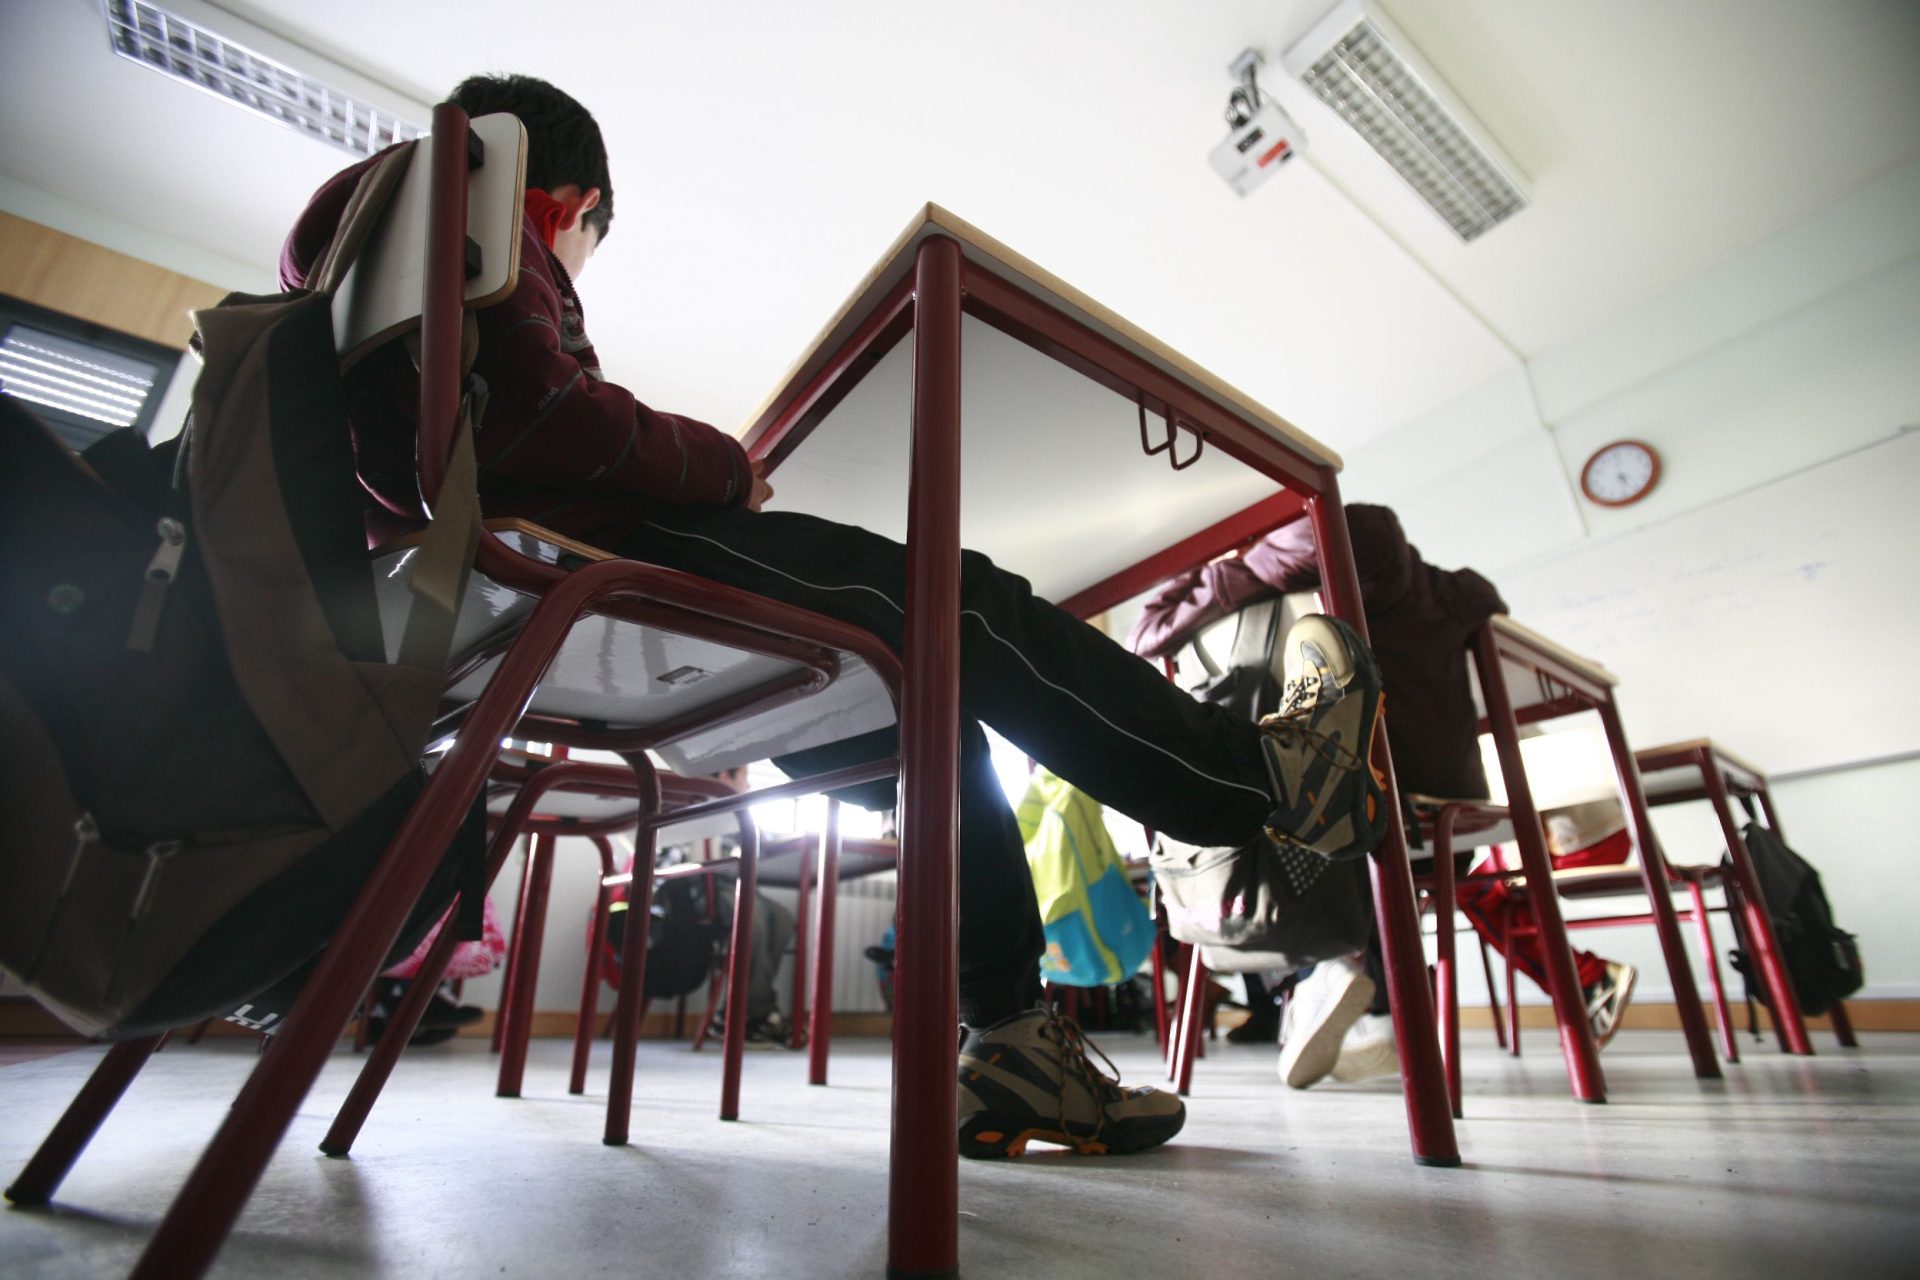 Municípios sem ensino secundário vão receber apoio do Estado para transporte de alunos